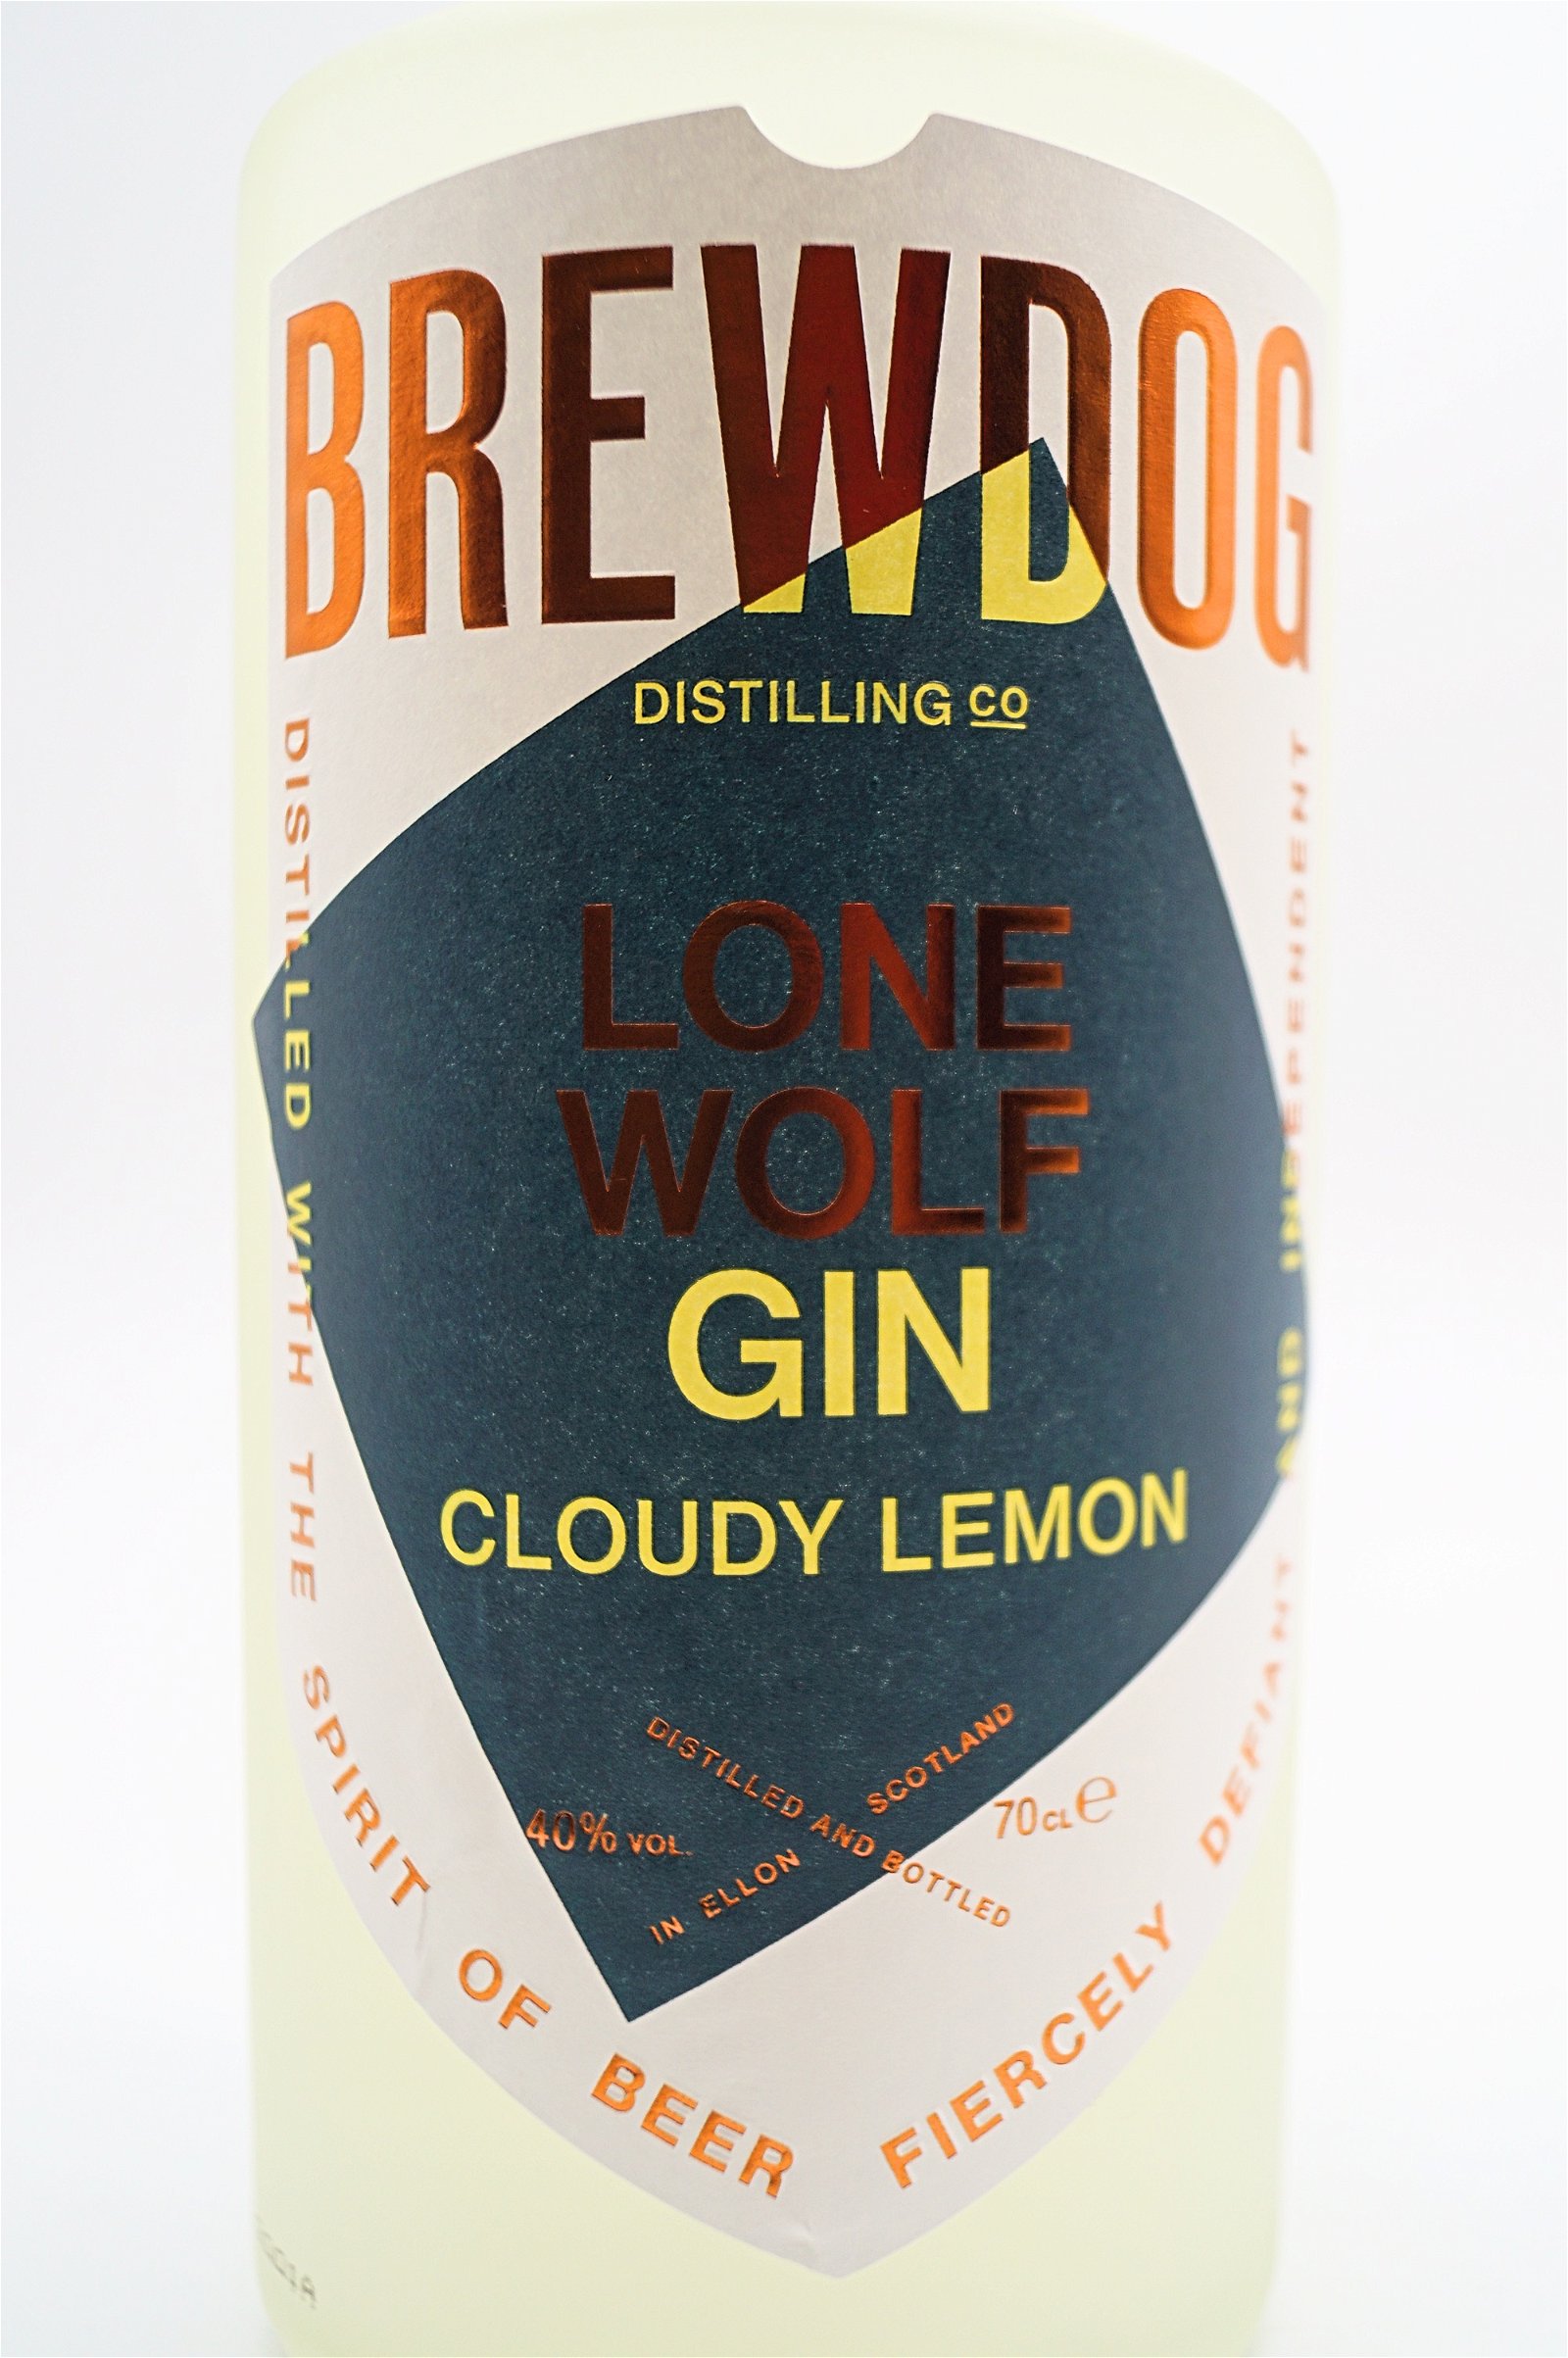 BrewDog Distilling Co. Lonewolf Cloudy Lemon Gin